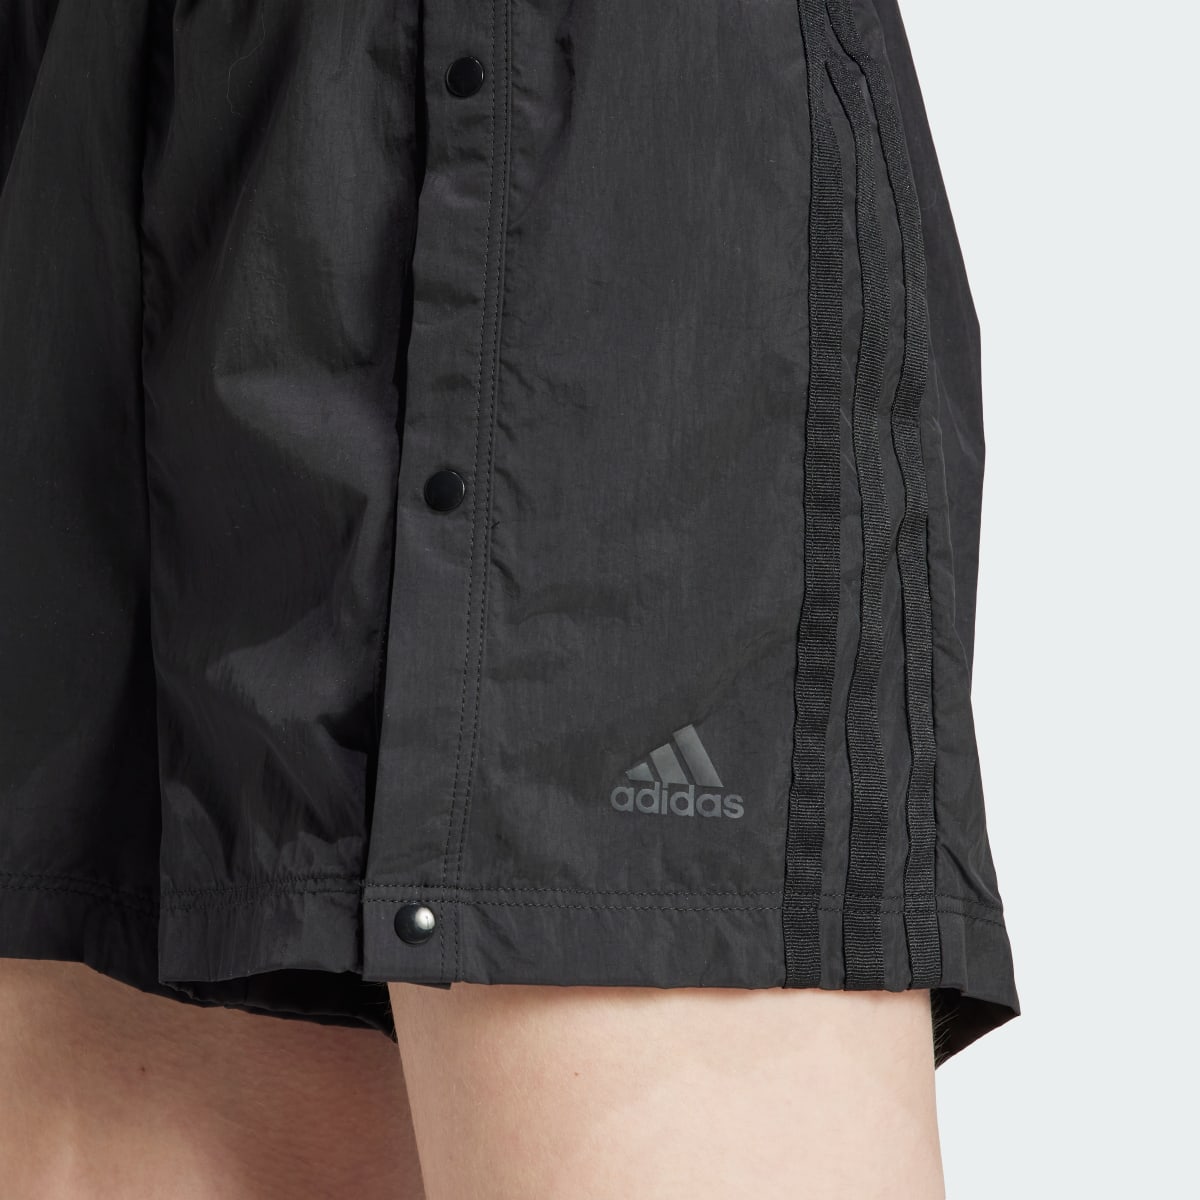 Adidas Tiro Snap-Button Shorts. 6